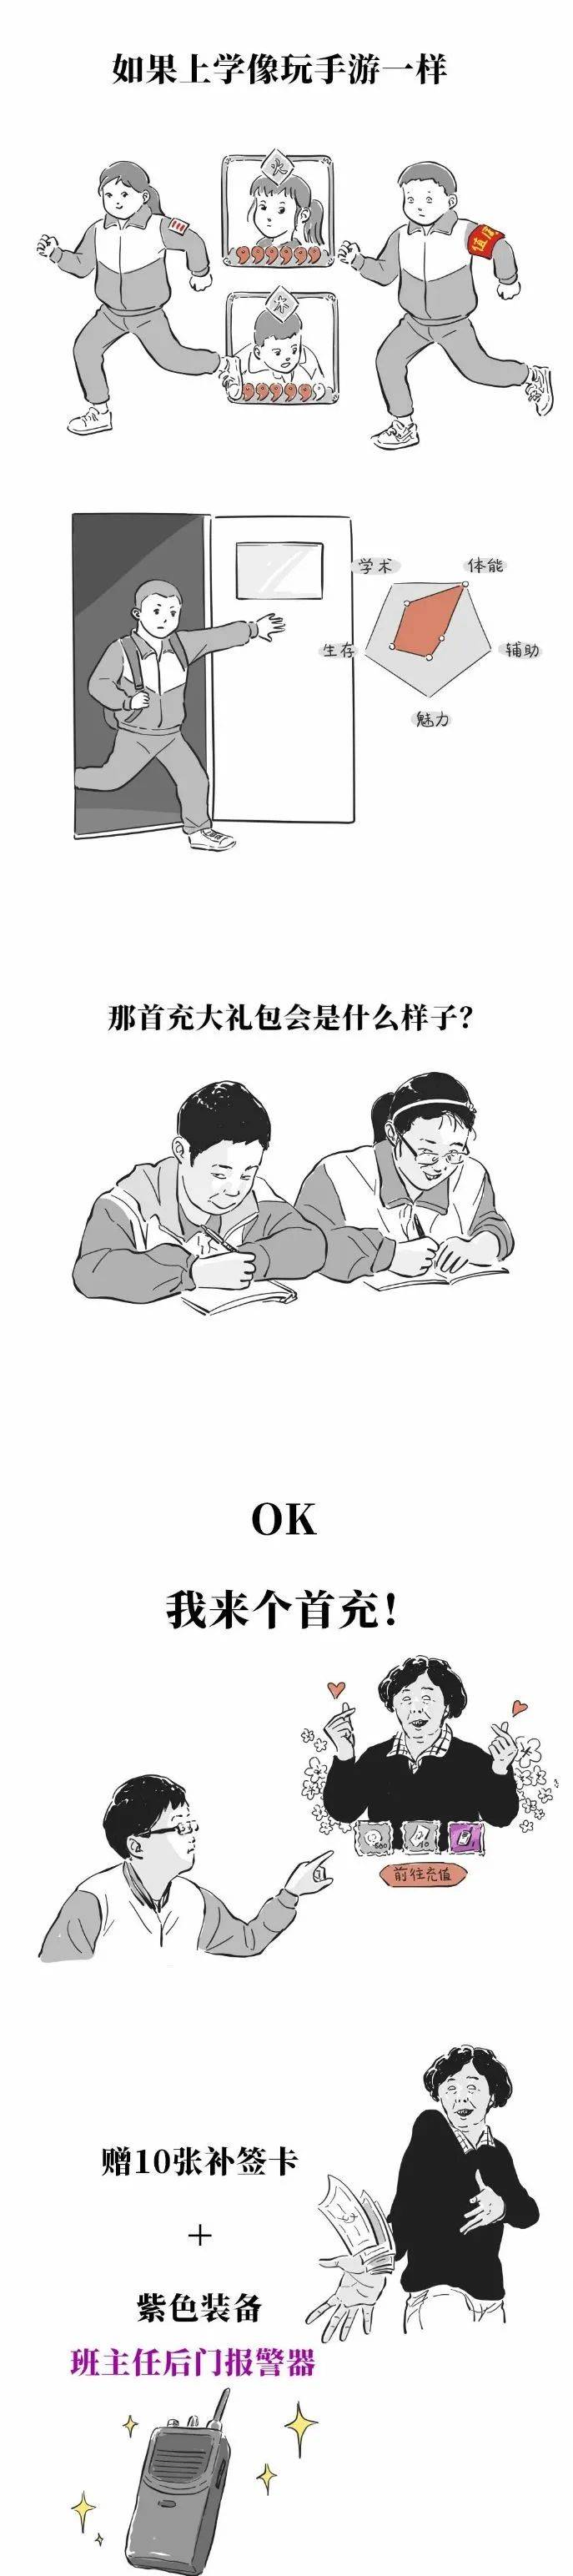 【短篇漫画】如果上学像游戏_yidao